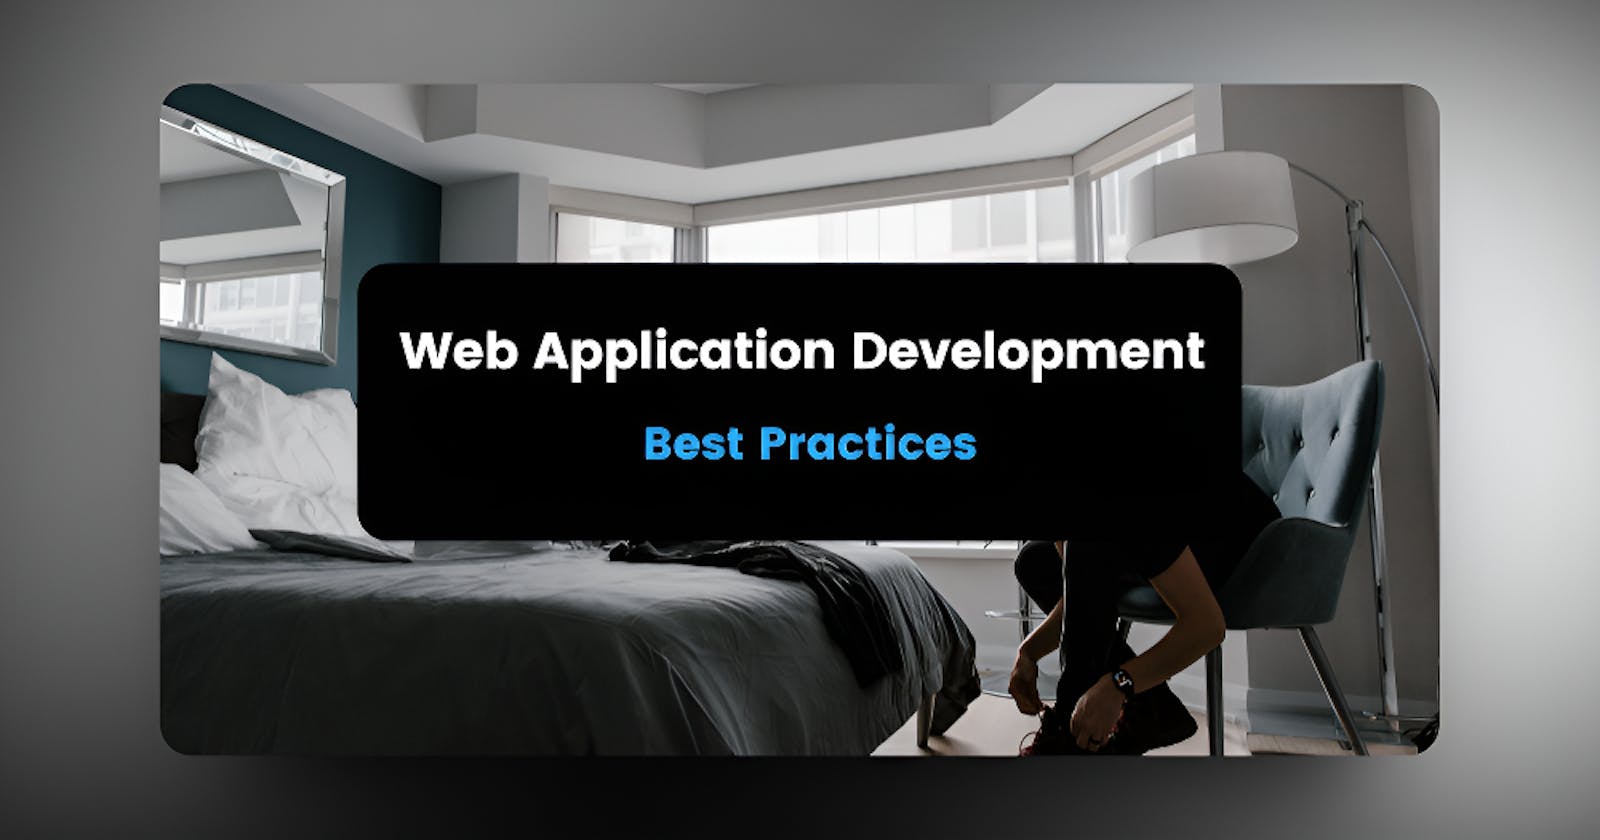 Web Application Development Best Practices